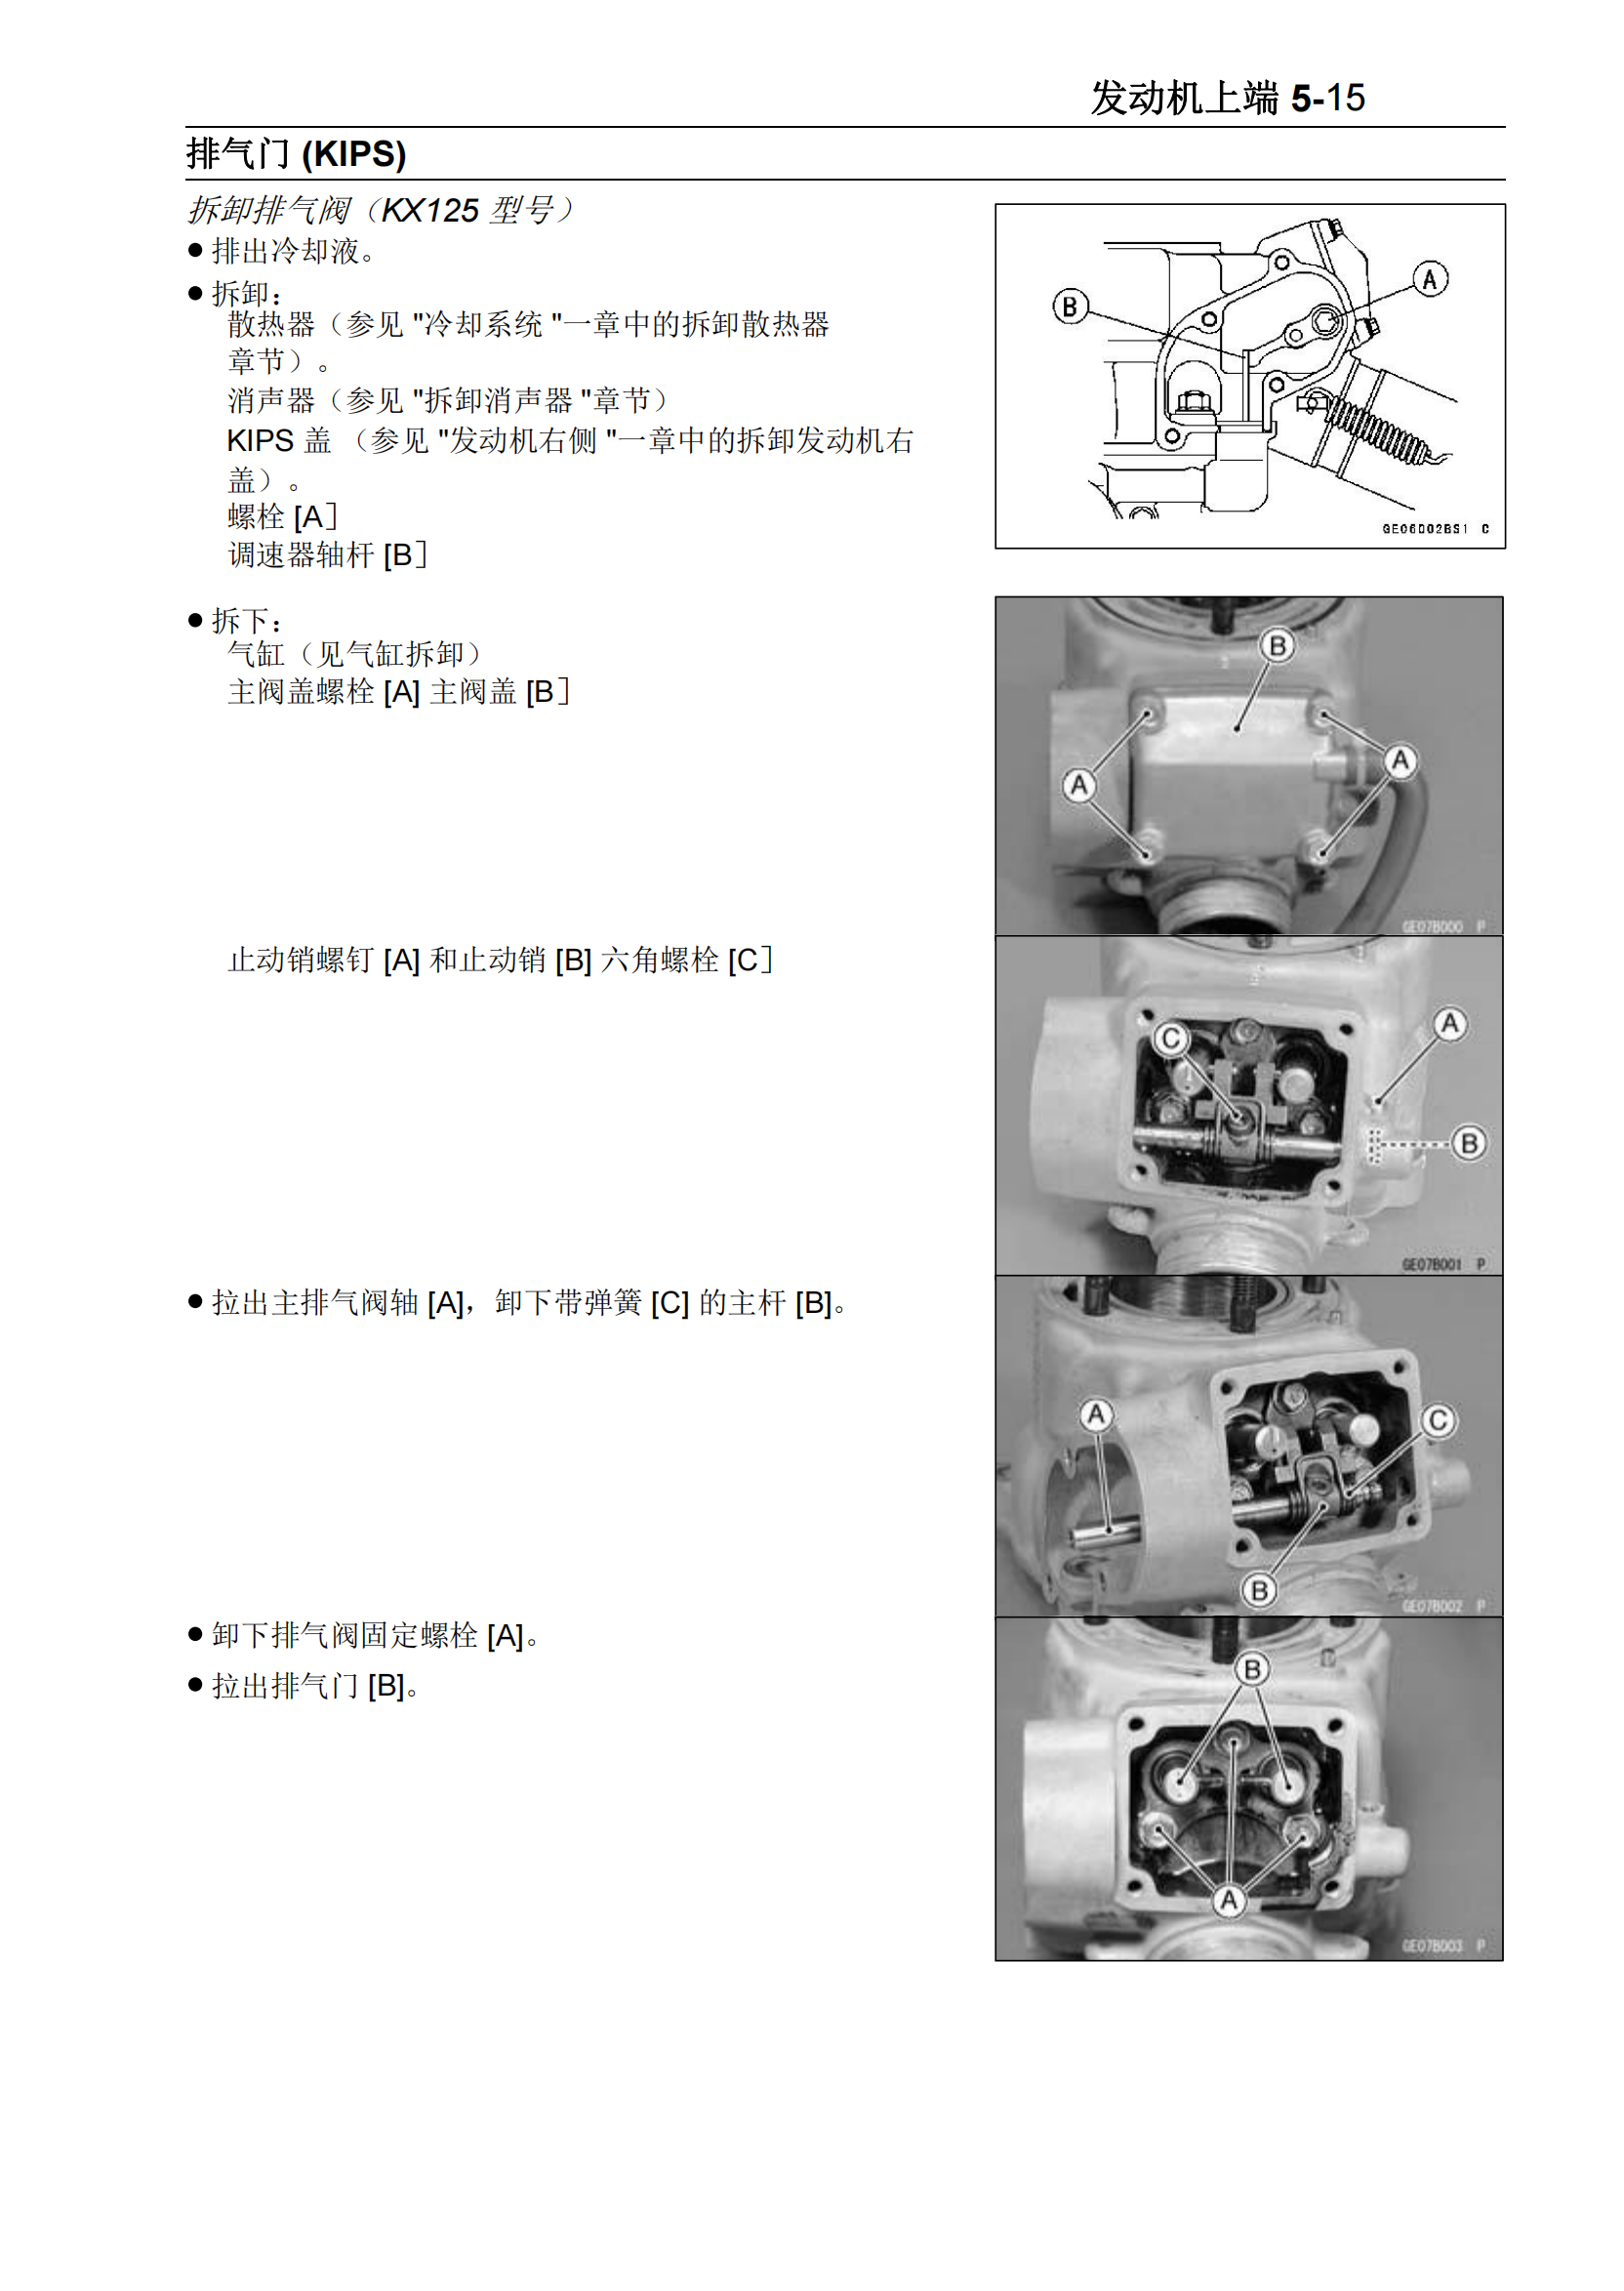 简体中文2003-2004年川崎kx125 kx250维修手册kawasaki kx125 kx250 维修手册插图3